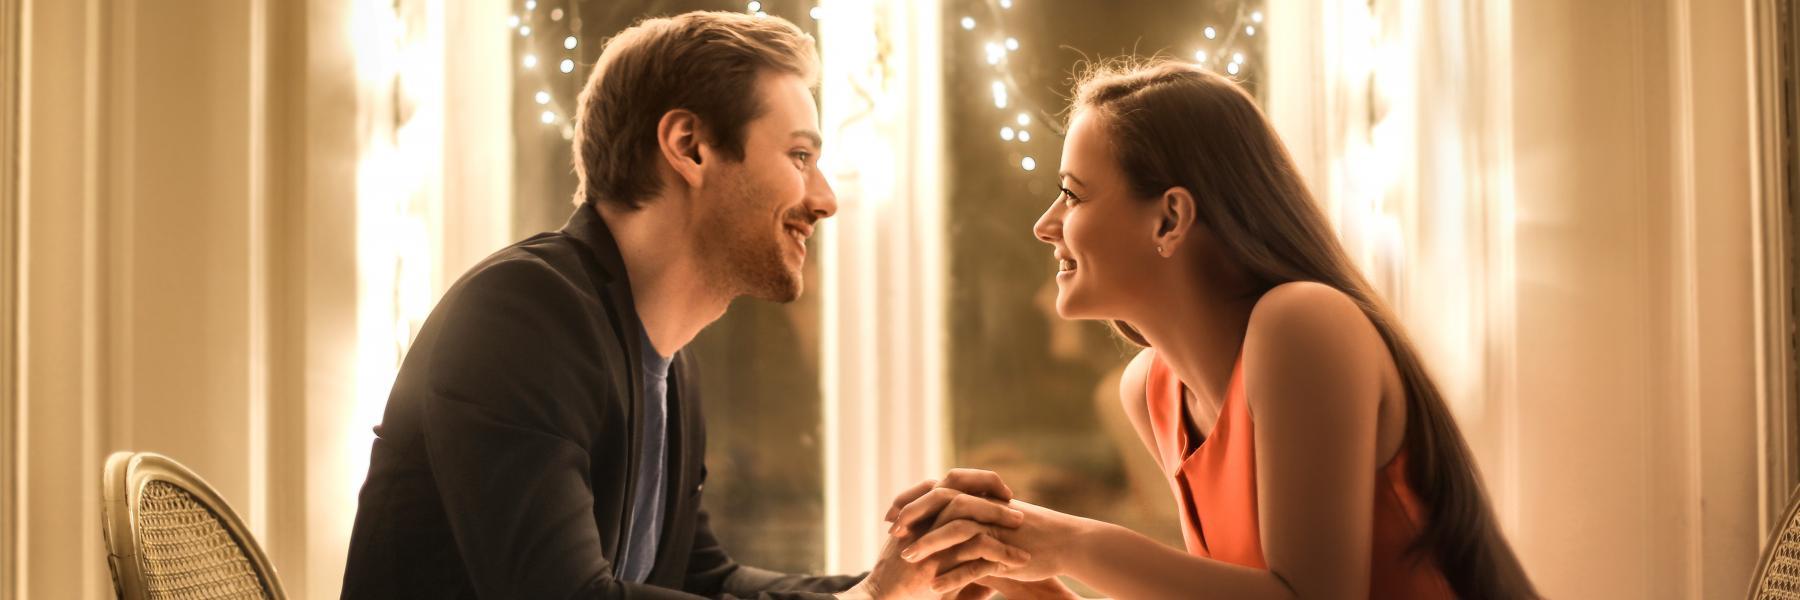 8 أفكار رومانسية للتعبير عن الحب لزوجكِ في الفالنتاين